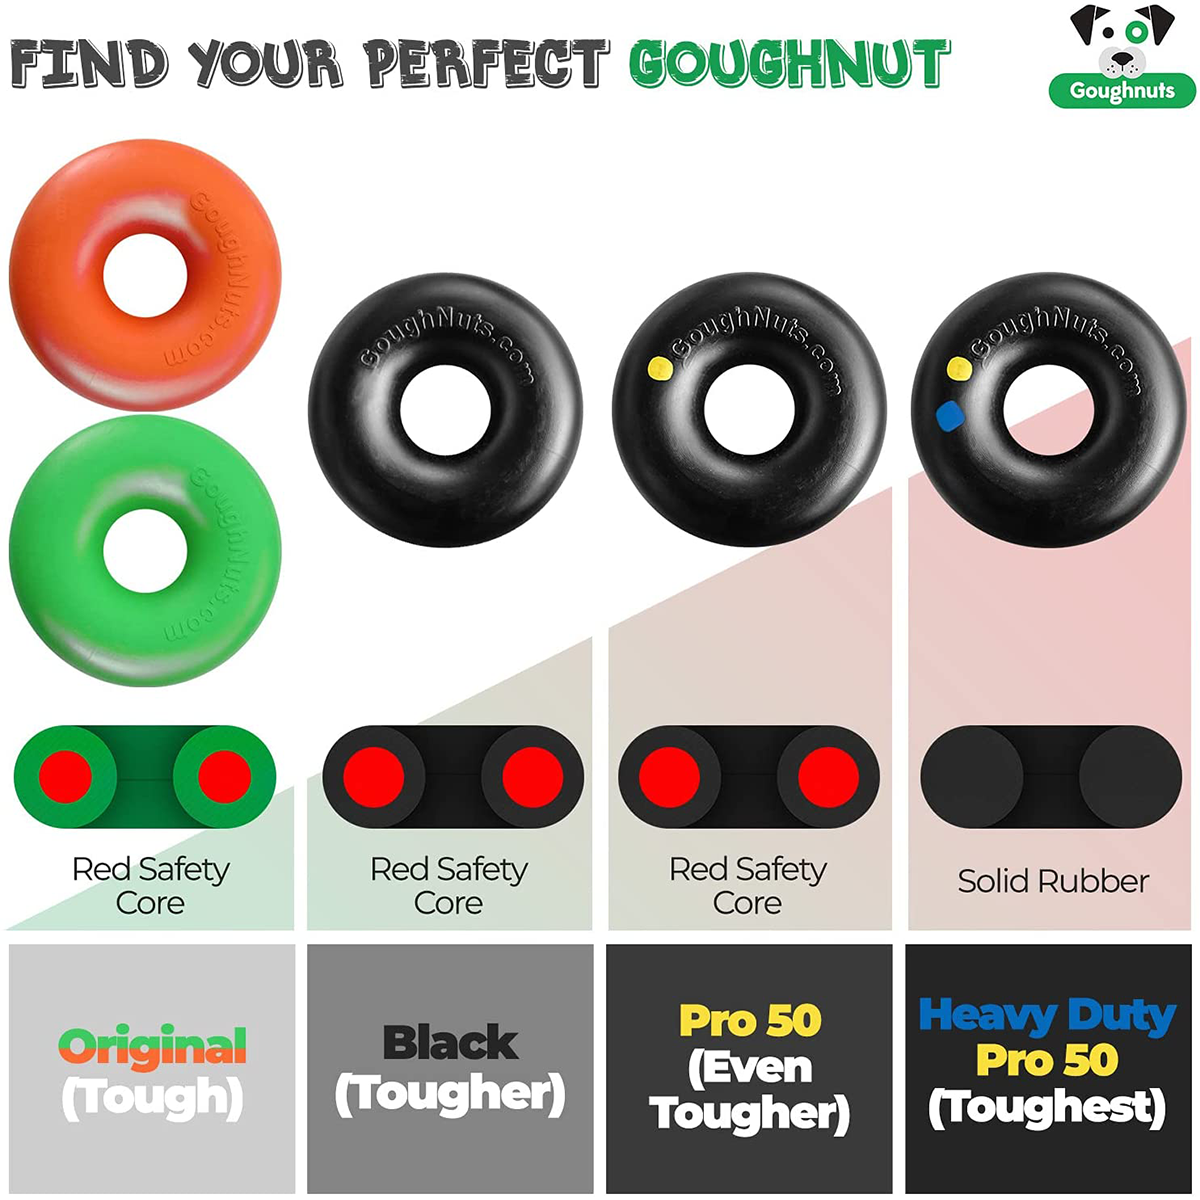 Goughnuts Ring Original - Heavy Duty